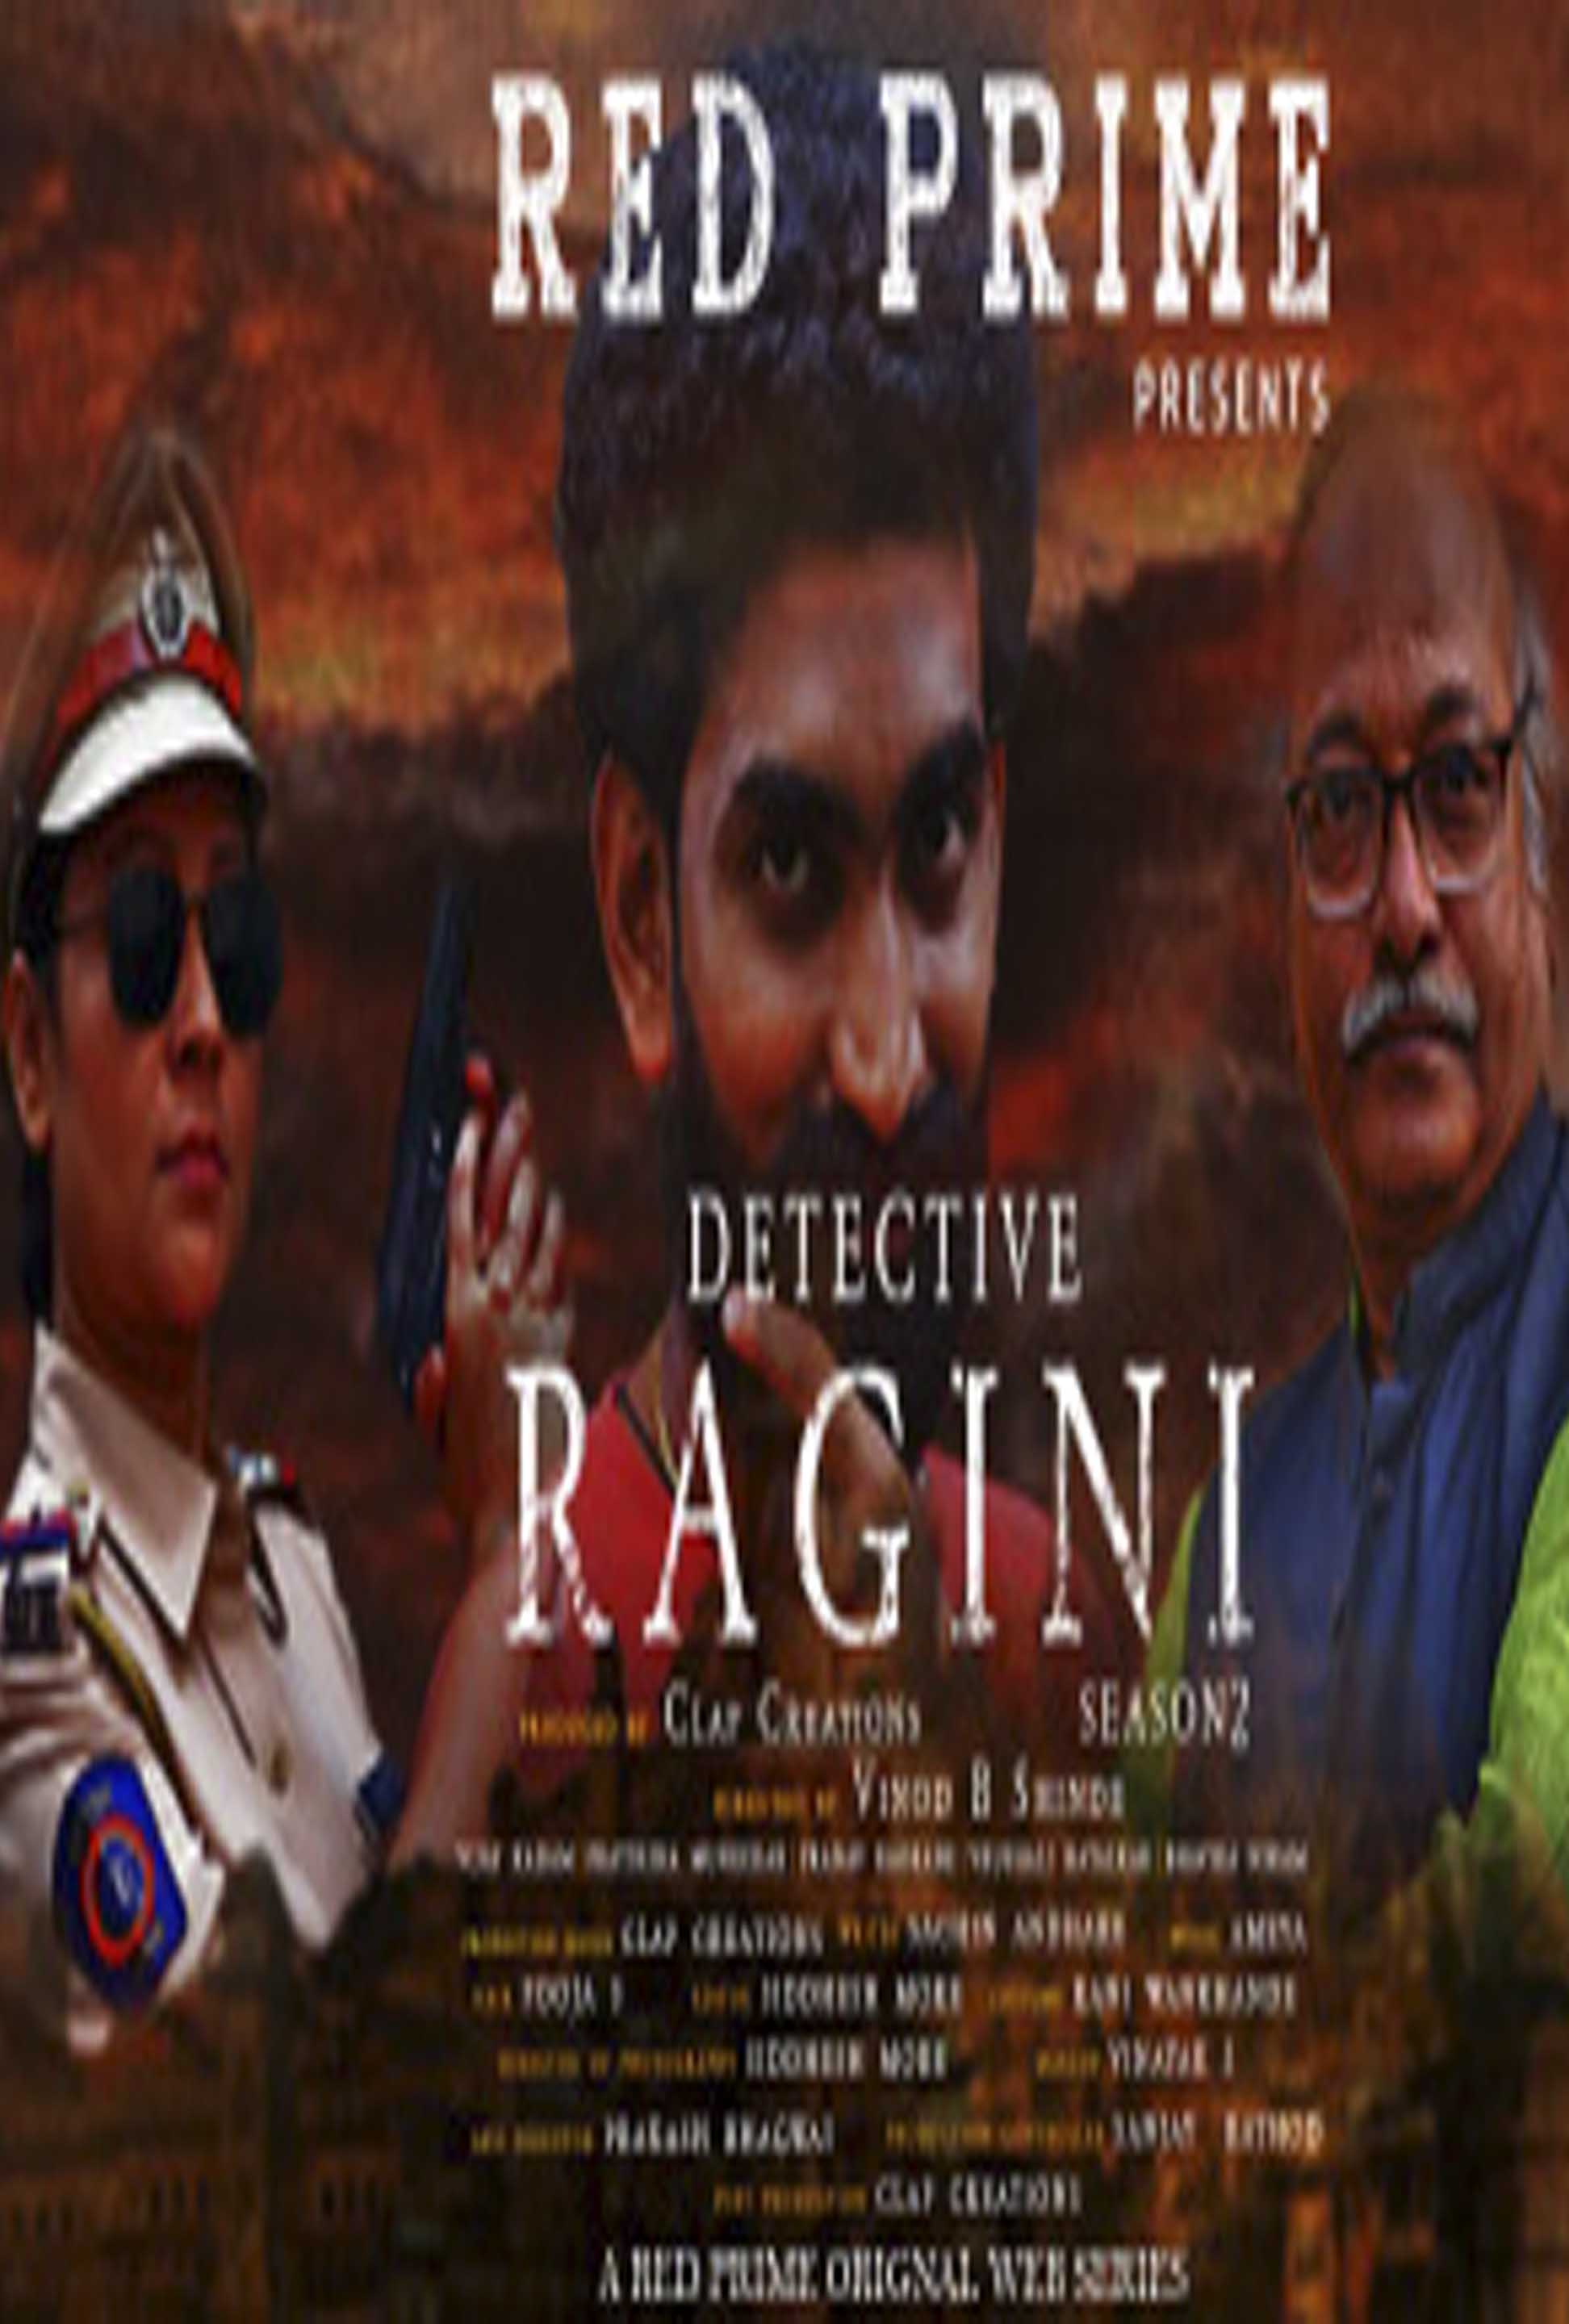 Detective Ragini 2021 S01EP01 Hindi RedPrime Original Web Series 720p HDRip 180MB Free Download